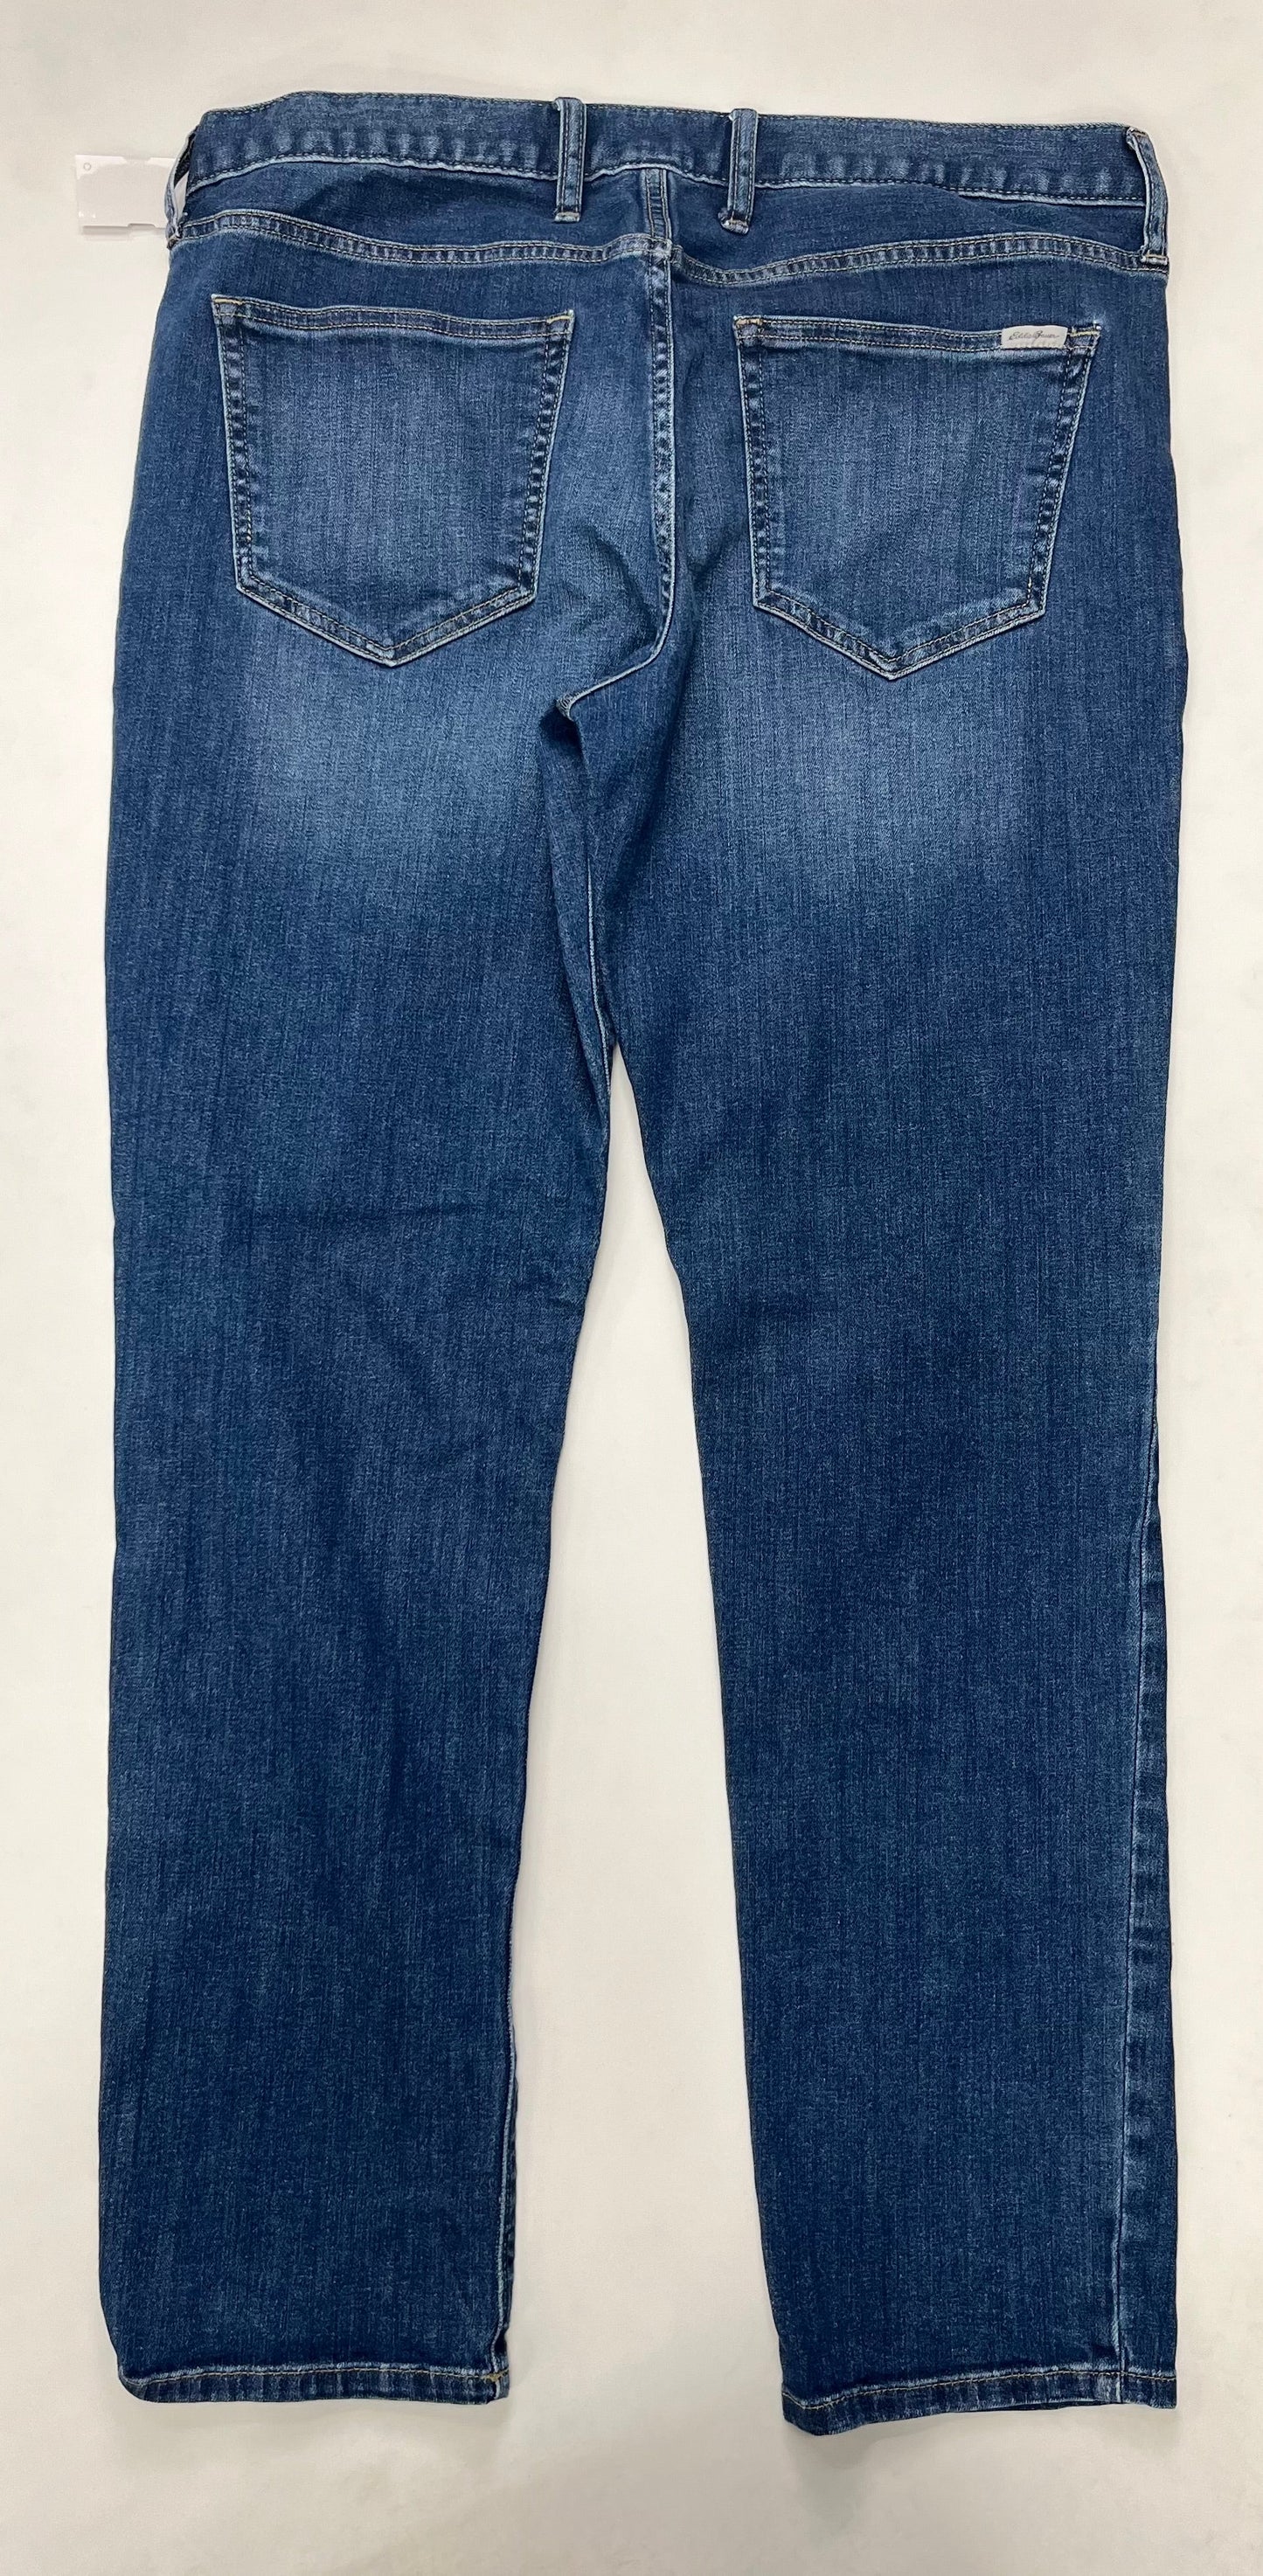 Jeans Straight By Eddie Bauer  Size: 14